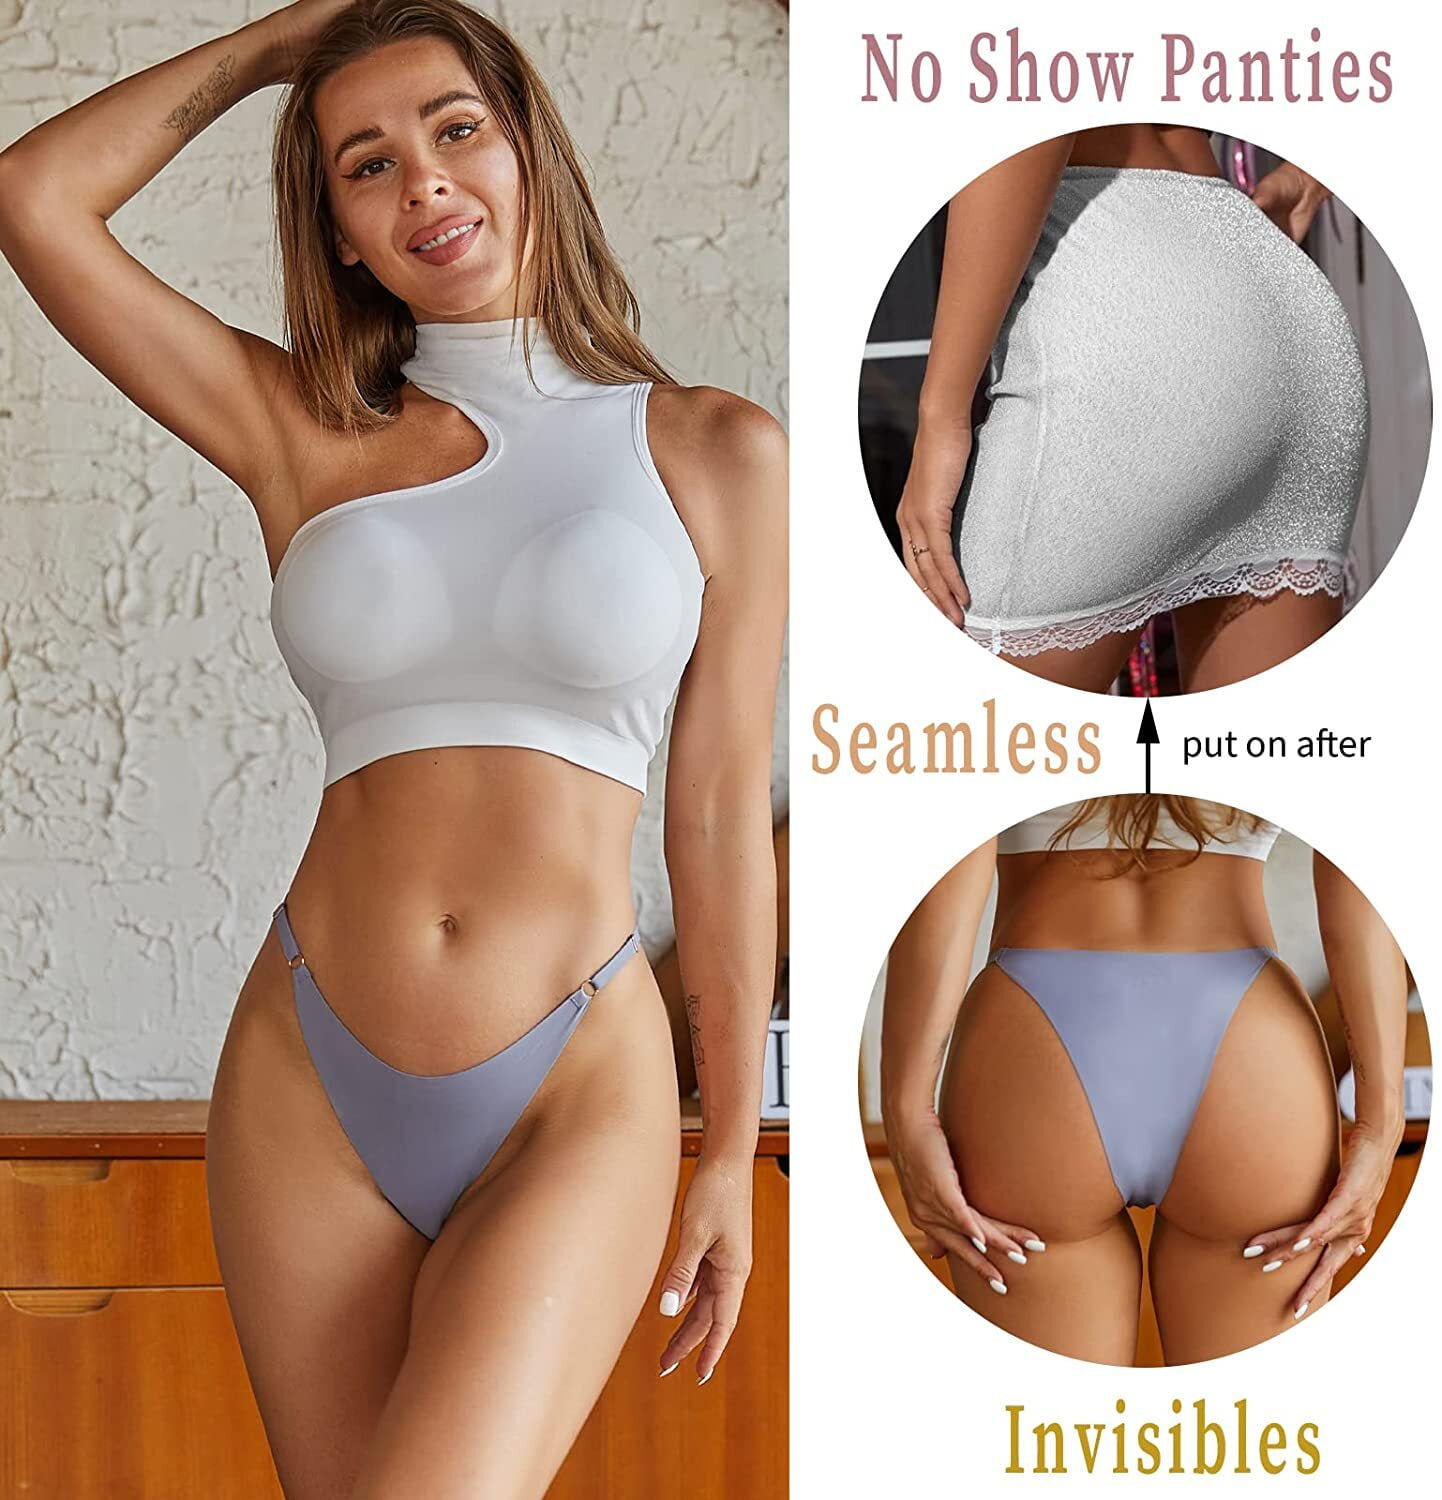 Riozz Women's Seamless Cheeky Underwear No Show Underwear for